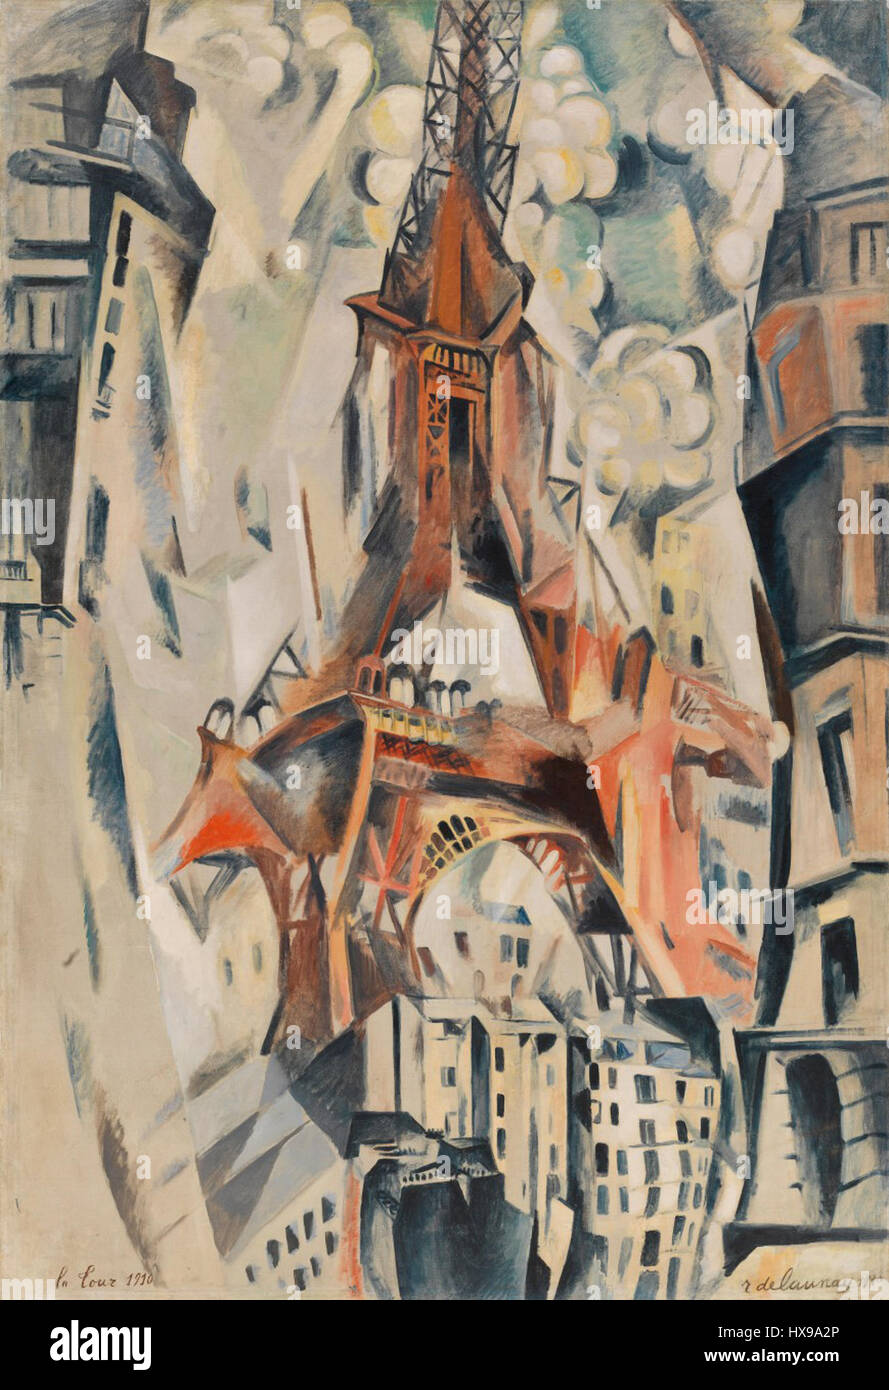 Robert Delaunay   Eiffel Tower   1911   Solomon R. Guggenheim Museum Stock Photo